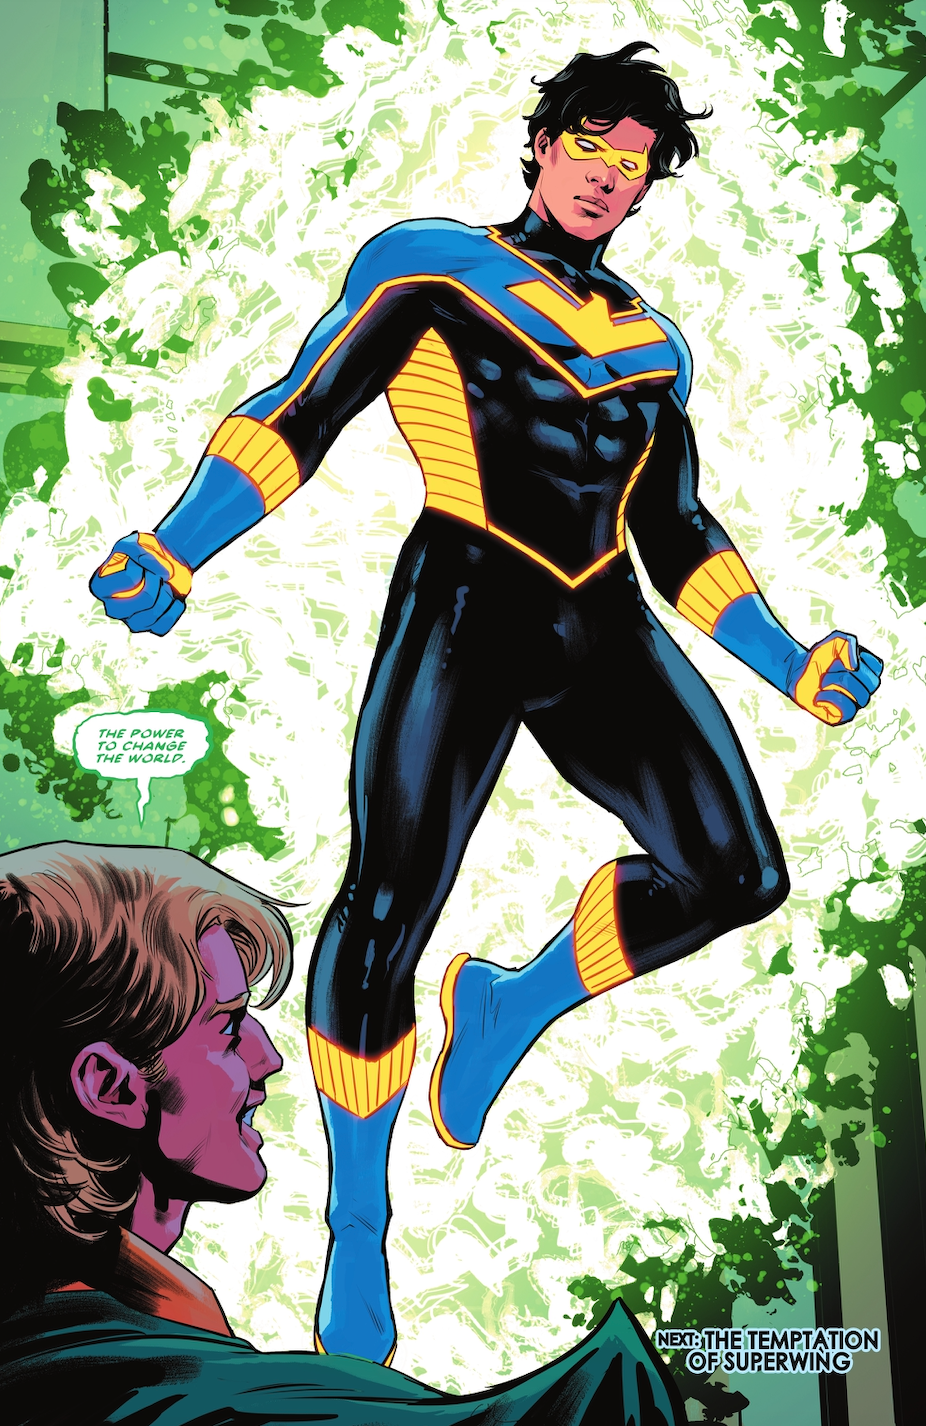 Dick Grayson recebe um novo traje e superpoderes mágicos de Neron em Nightwing #103 da DC.